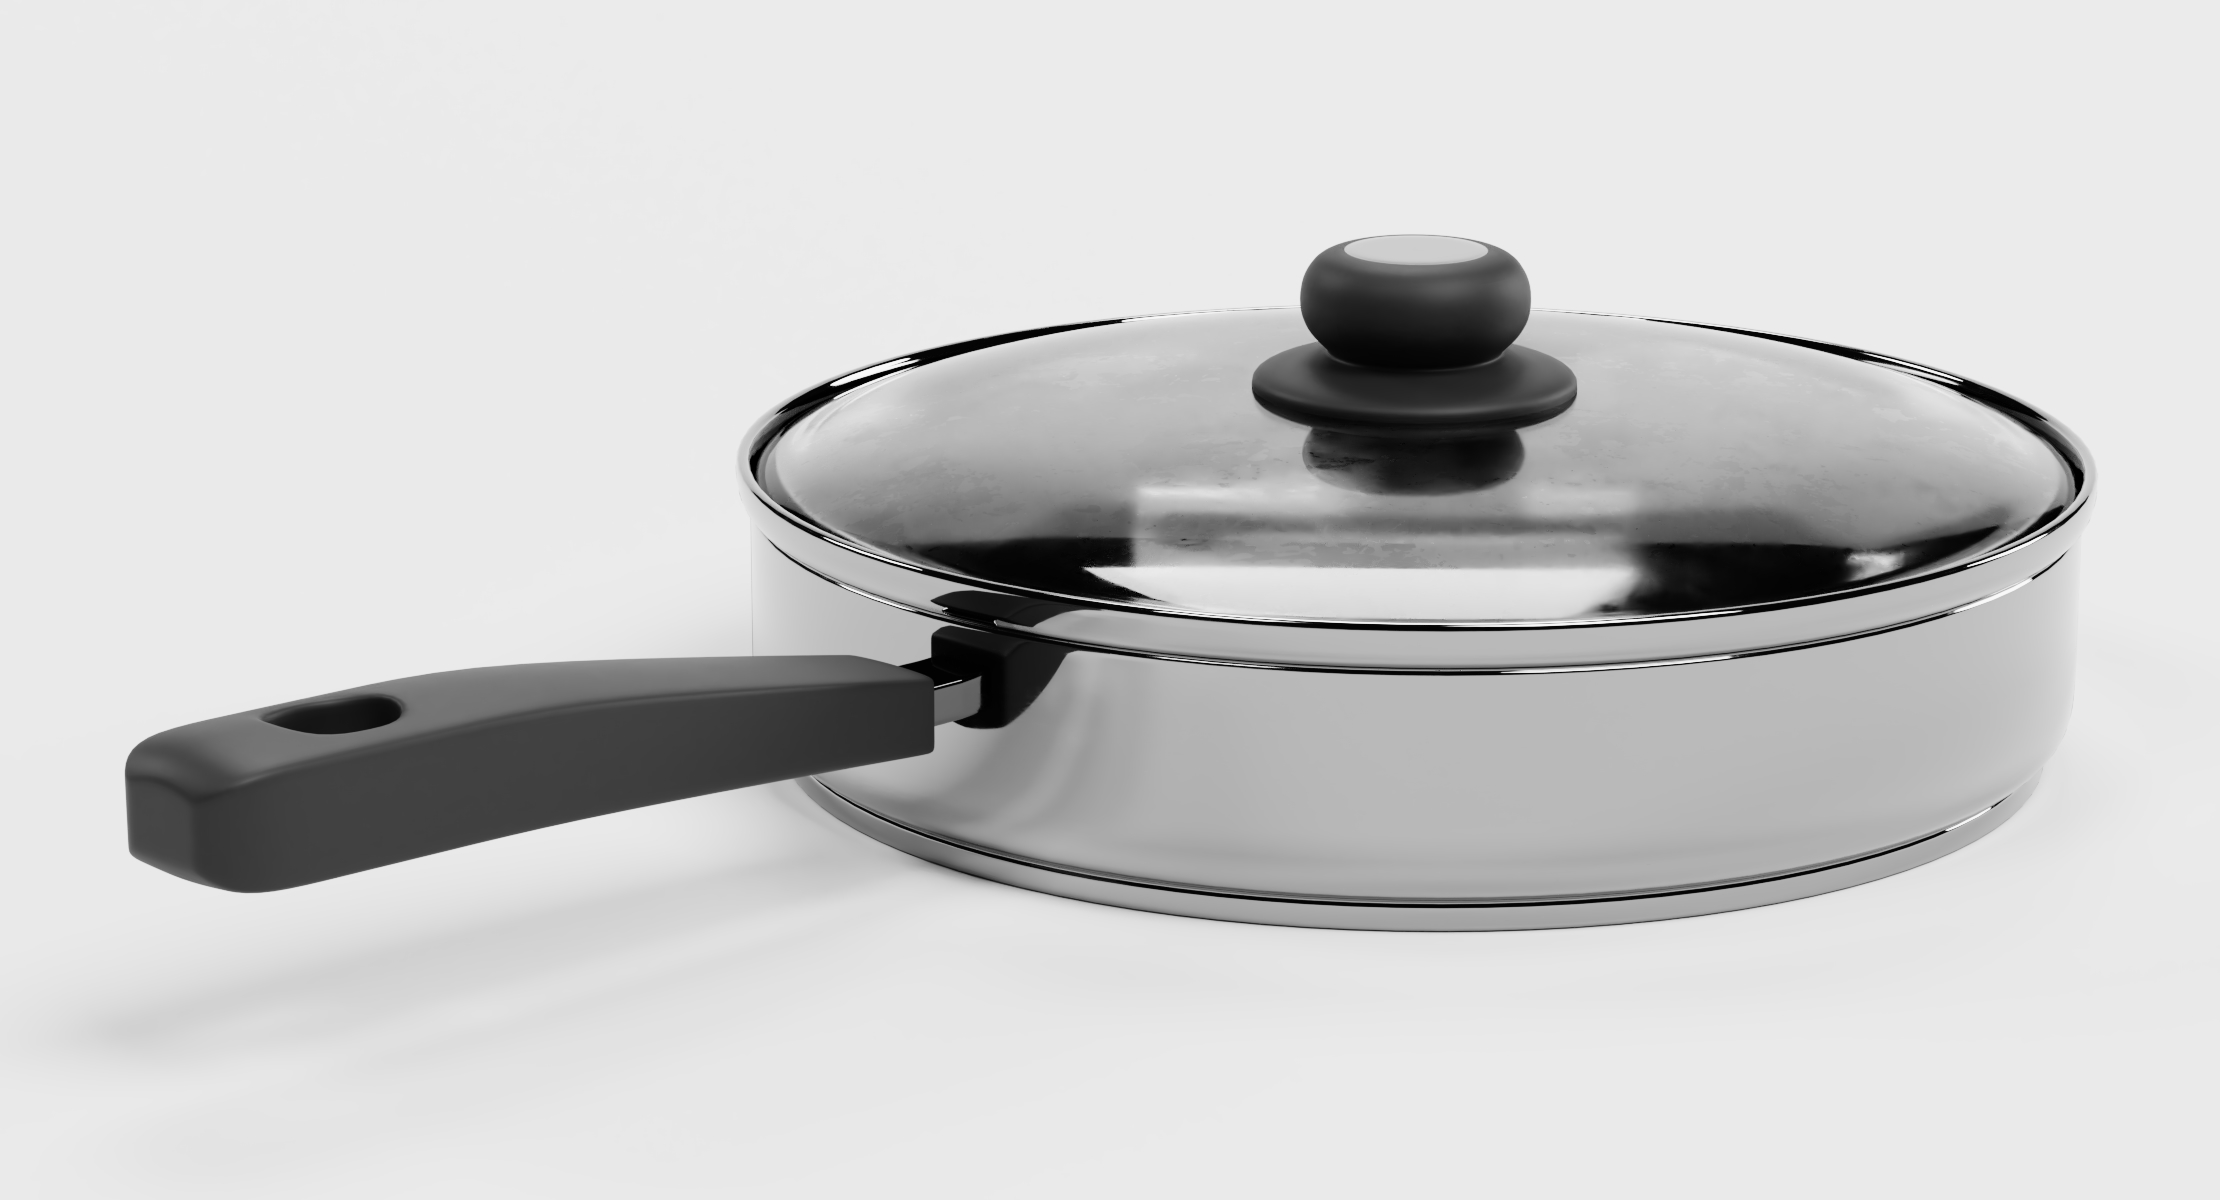  Cooking  pot  3D  model  TurboSquid 1363358